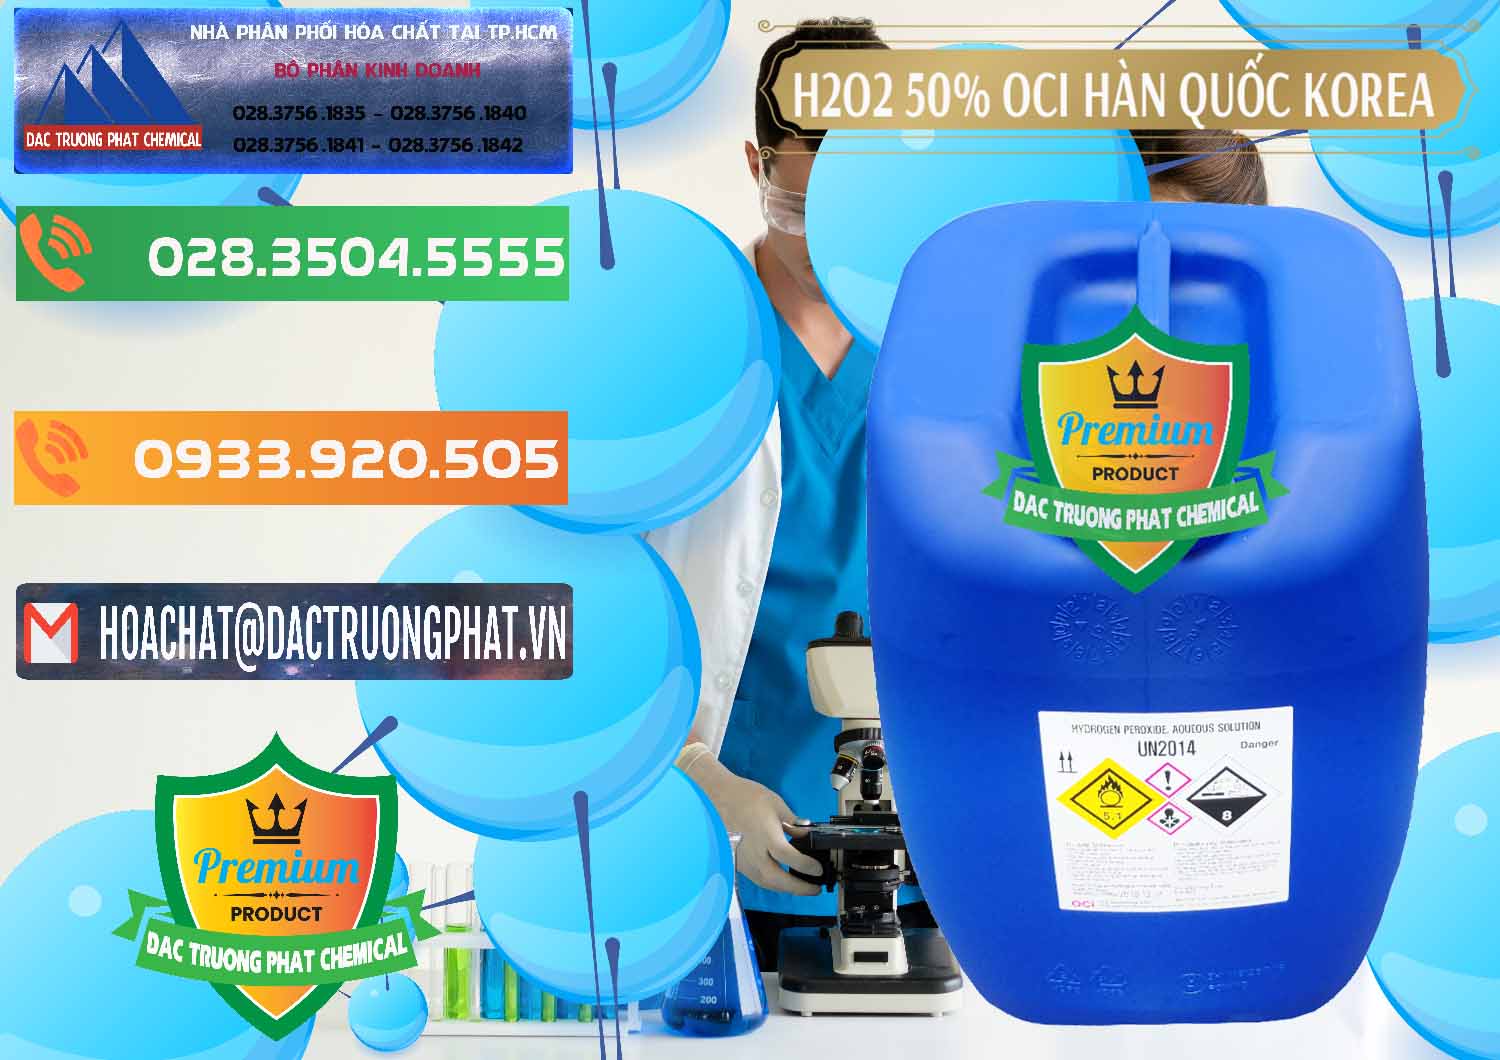 Nơi bán _ cung cấp H2O2 - Hydrogen Peroxide 50% OCI Hàn Quốc Korea - 0075 - Công ty cung cấp - kinh doanh hóa chất tại TP.HCM - hoachatxulynuoc.com.vn